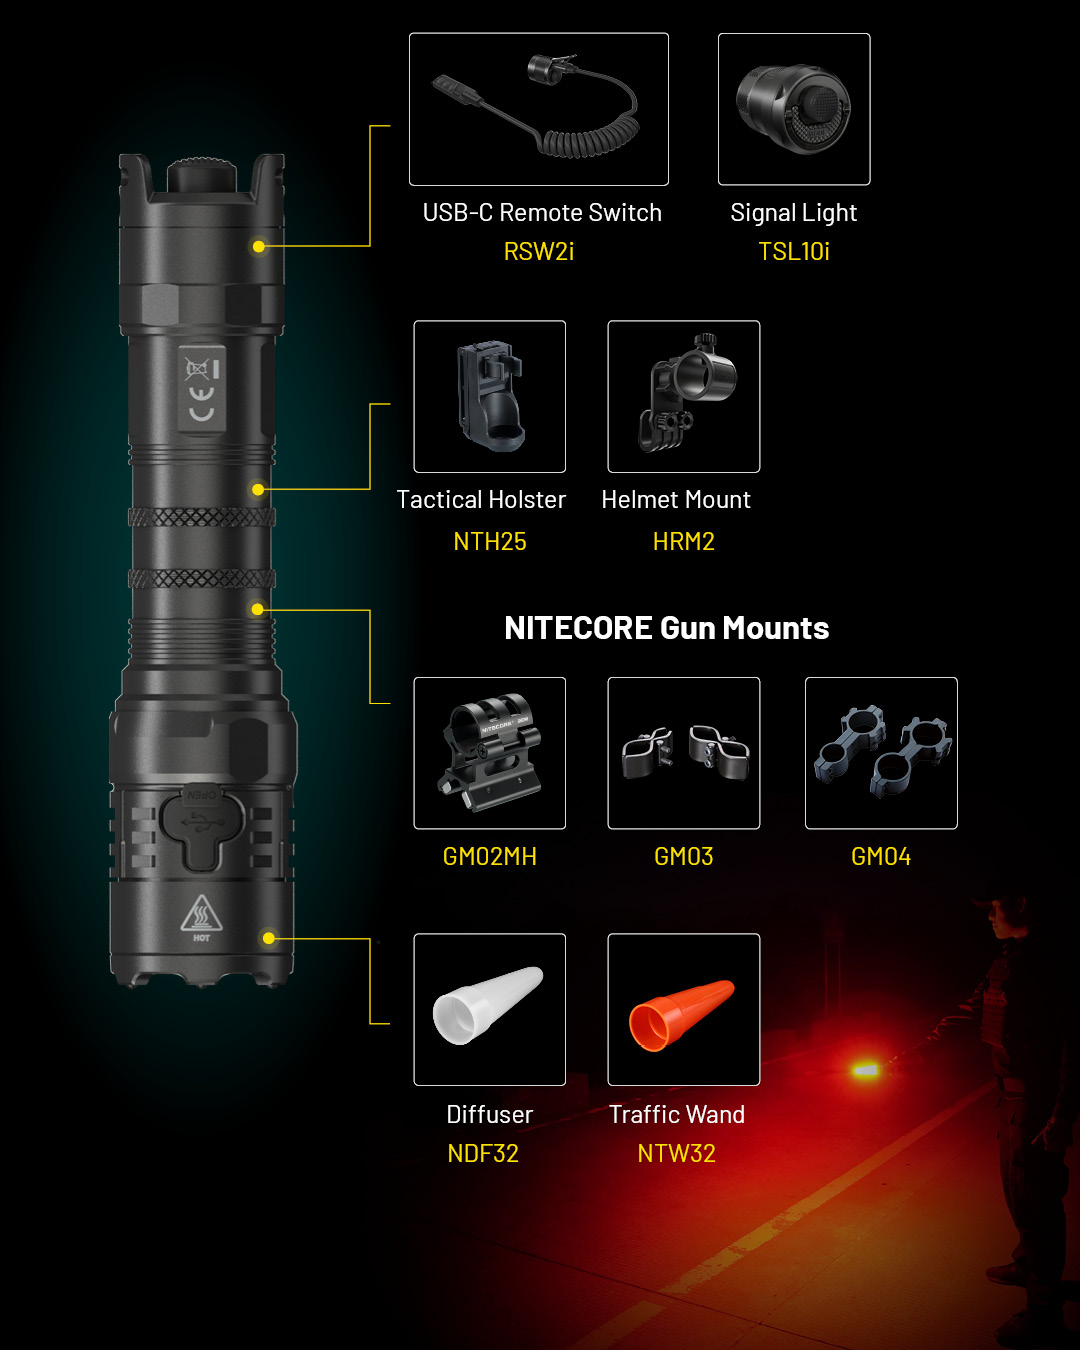 NITECORE-Lampe de poche tactique, P23i 3000, avec batterie NL2150Gardens I  standard à l'intérieur de l'emballage